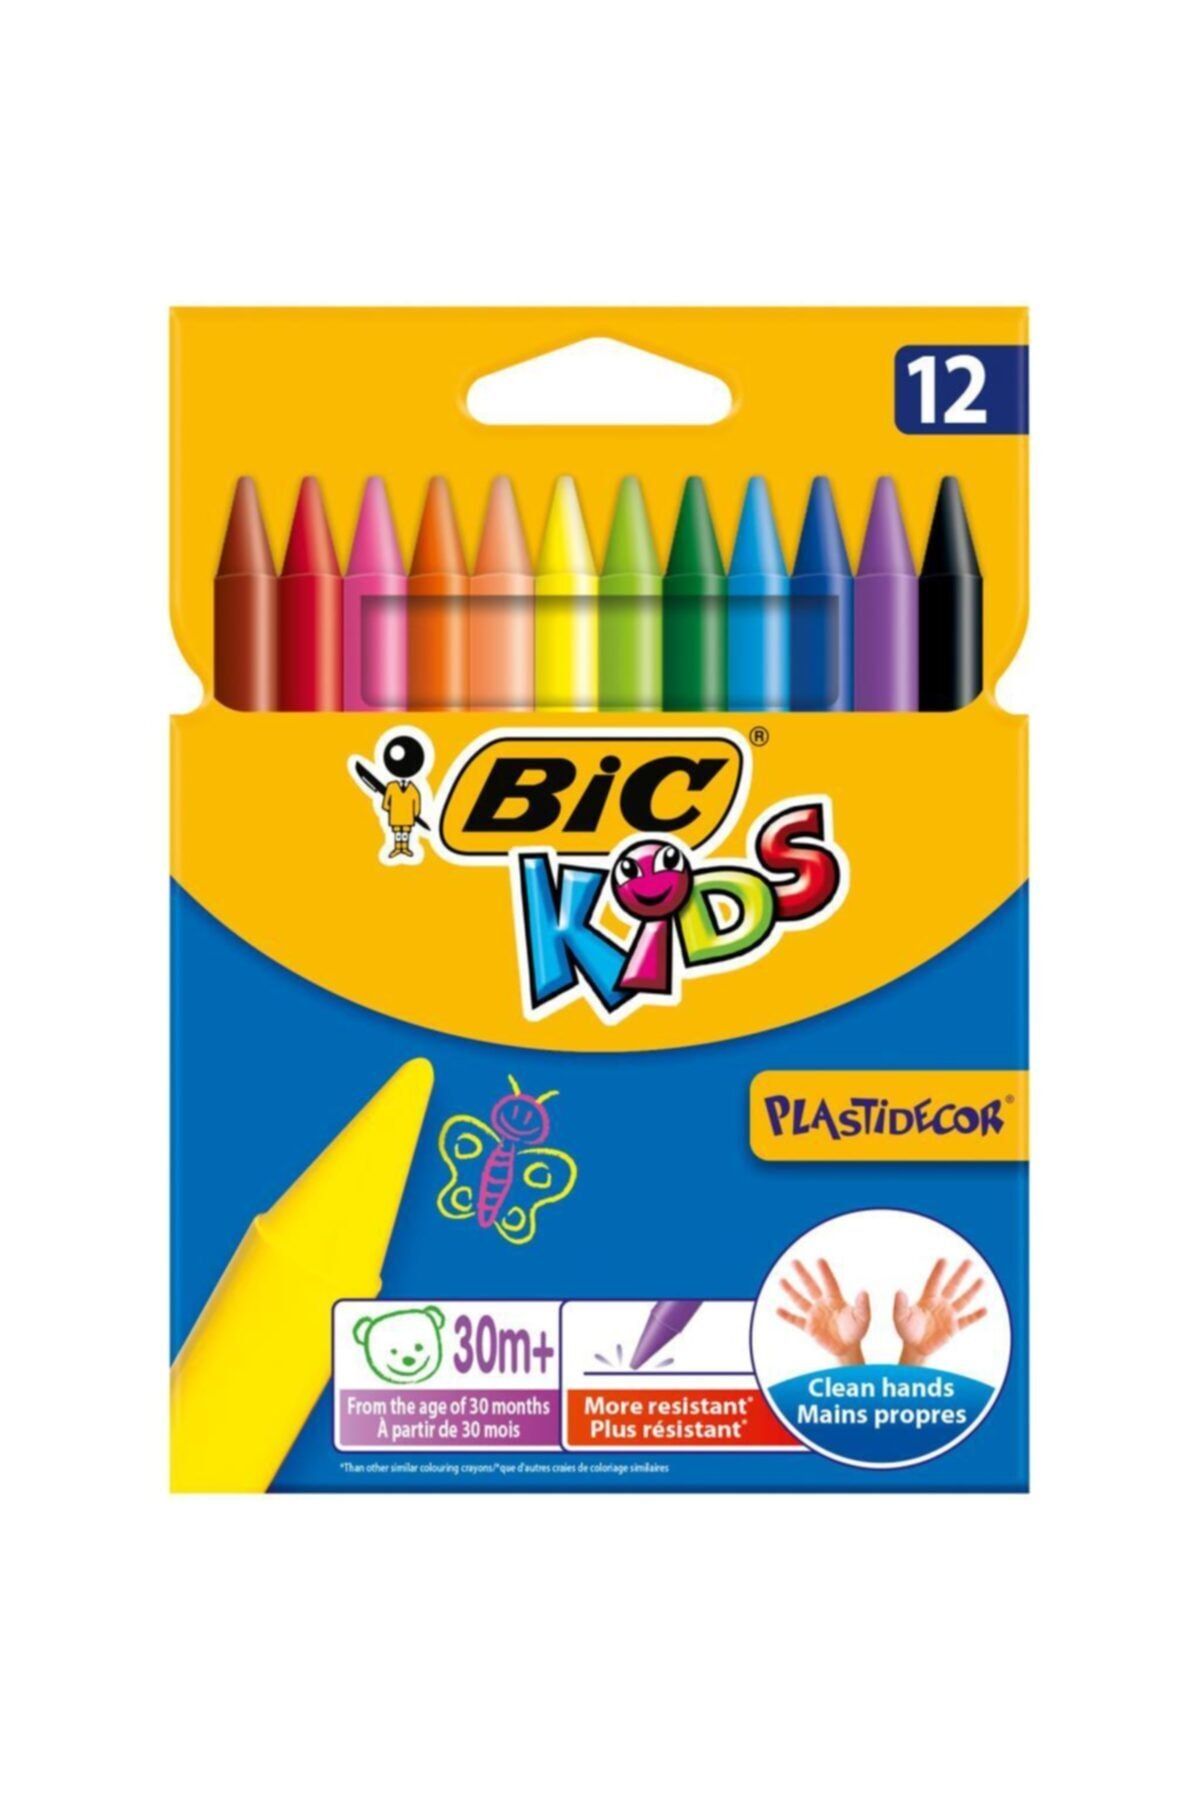 Bic Kids Plastidecor Elleri Kirletmeyen Silinebilir Pastel 12 Renk 945764